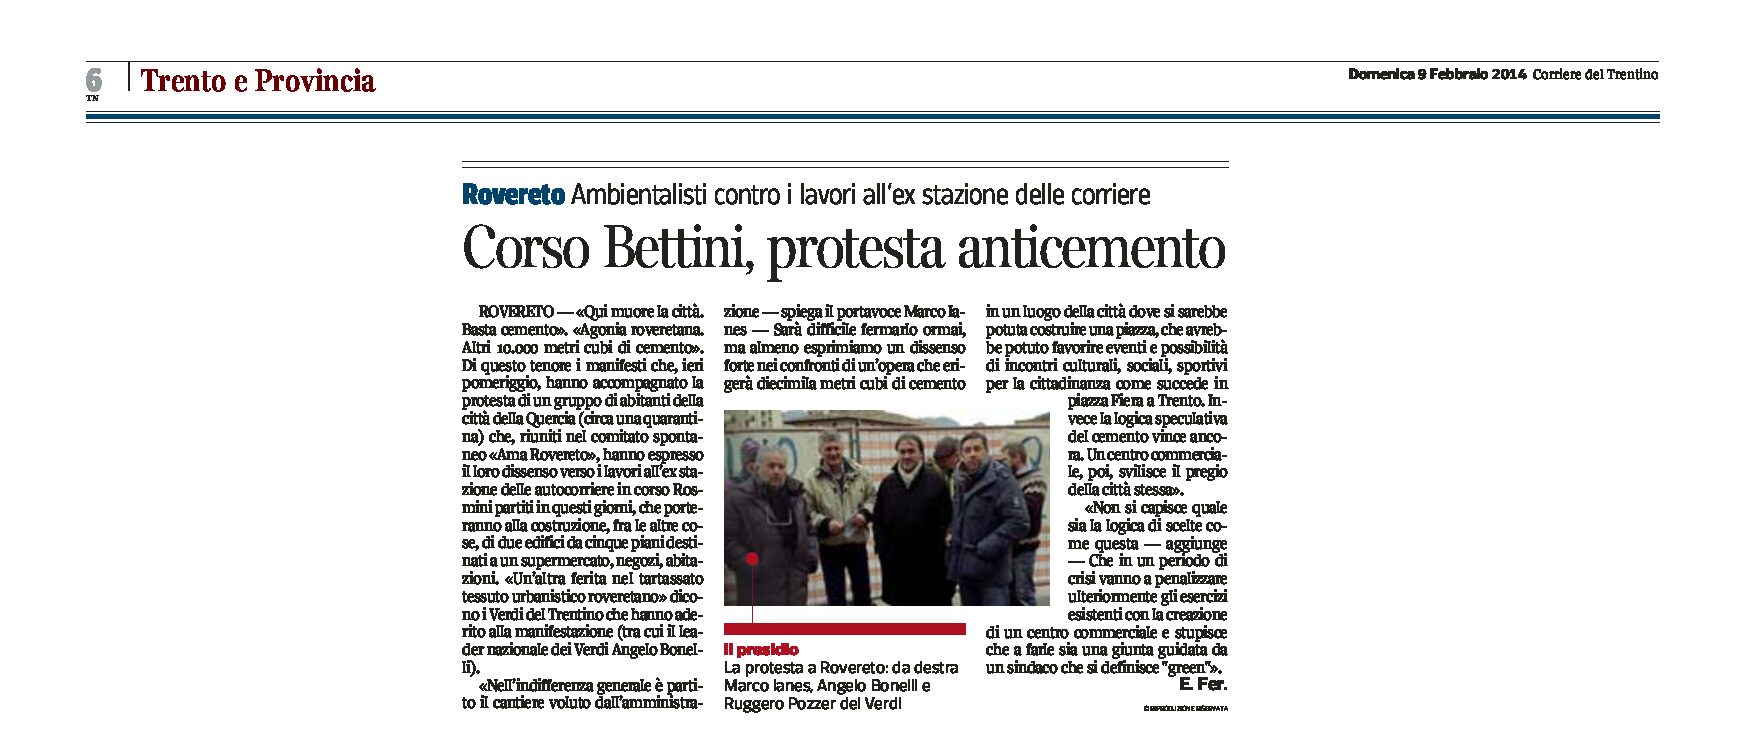 Rovereto: corso Bettini, protesta anticemento